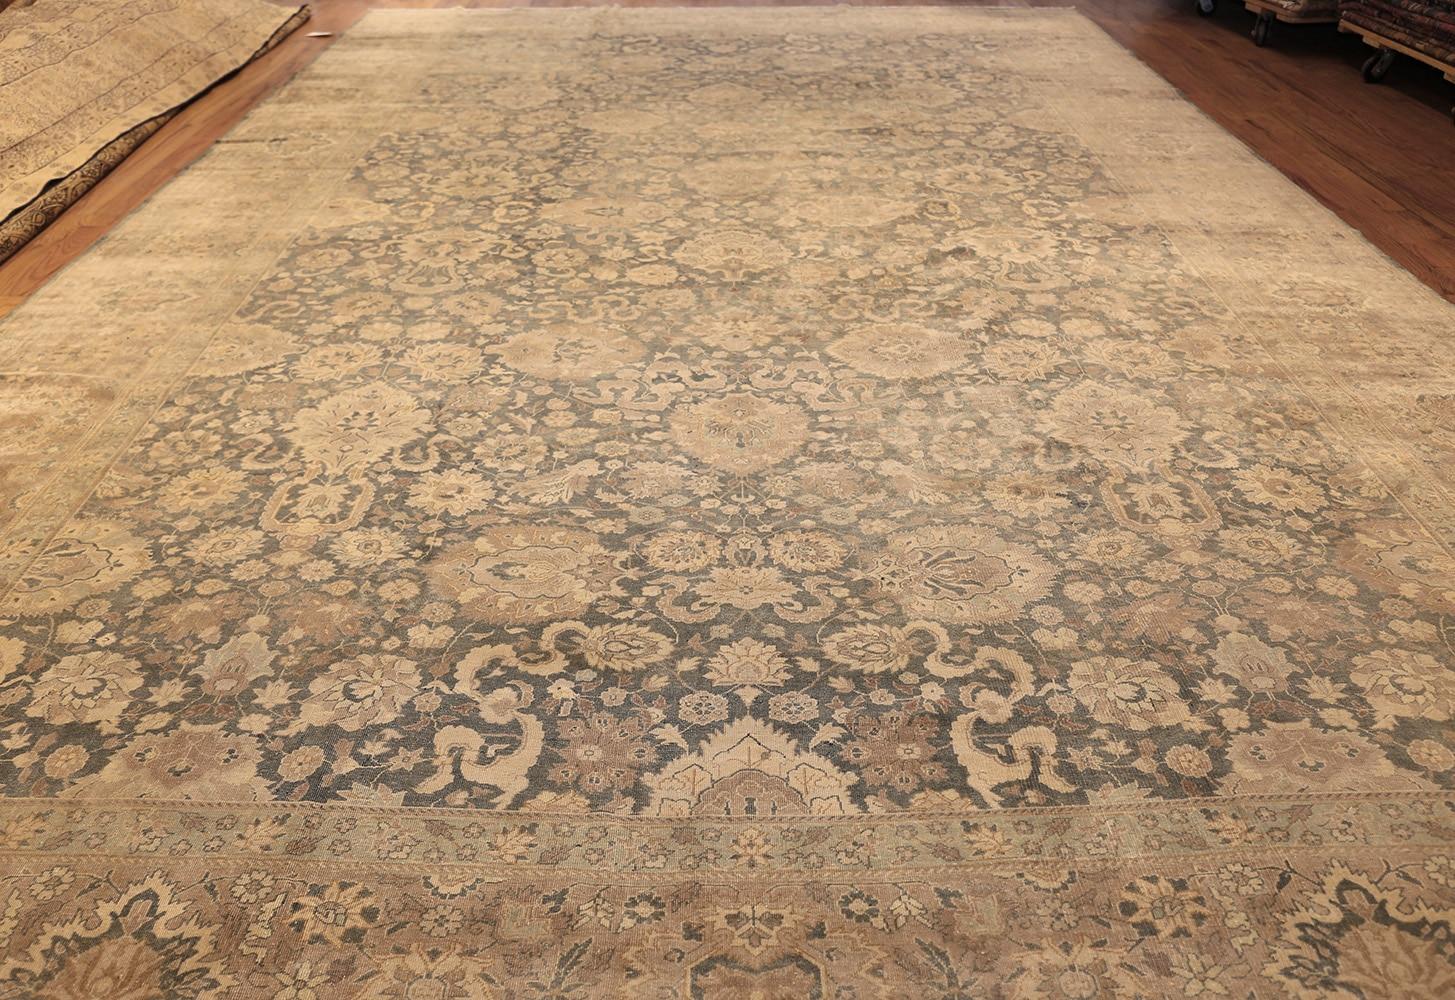 Magnifique tapis floral indien ancien de grande taille, pays d'origine : Inde, date circa début 20ème siècle. Taille : 12 ft. x 19 ft. 7 in (3.66 m x 5.97 m)

D'une composition classique, ce charmant tapis oriental ancien se caractérise avant tout